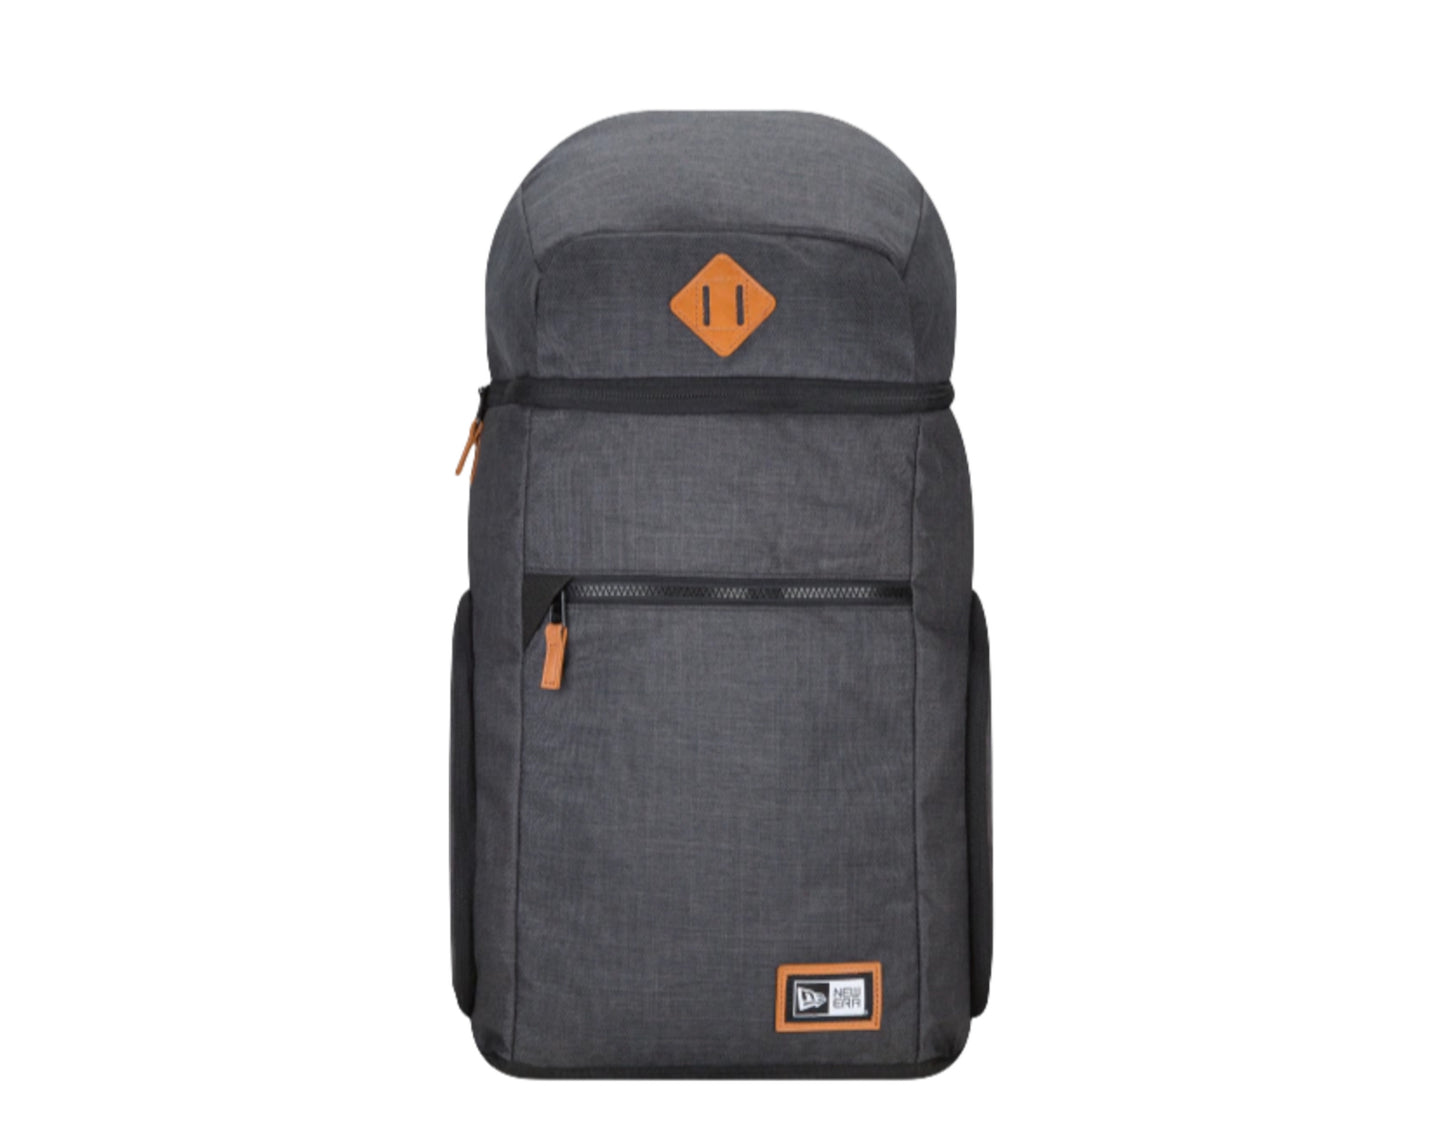 New Era Cap Protector Pack Backpack - 24 Liters Capacity